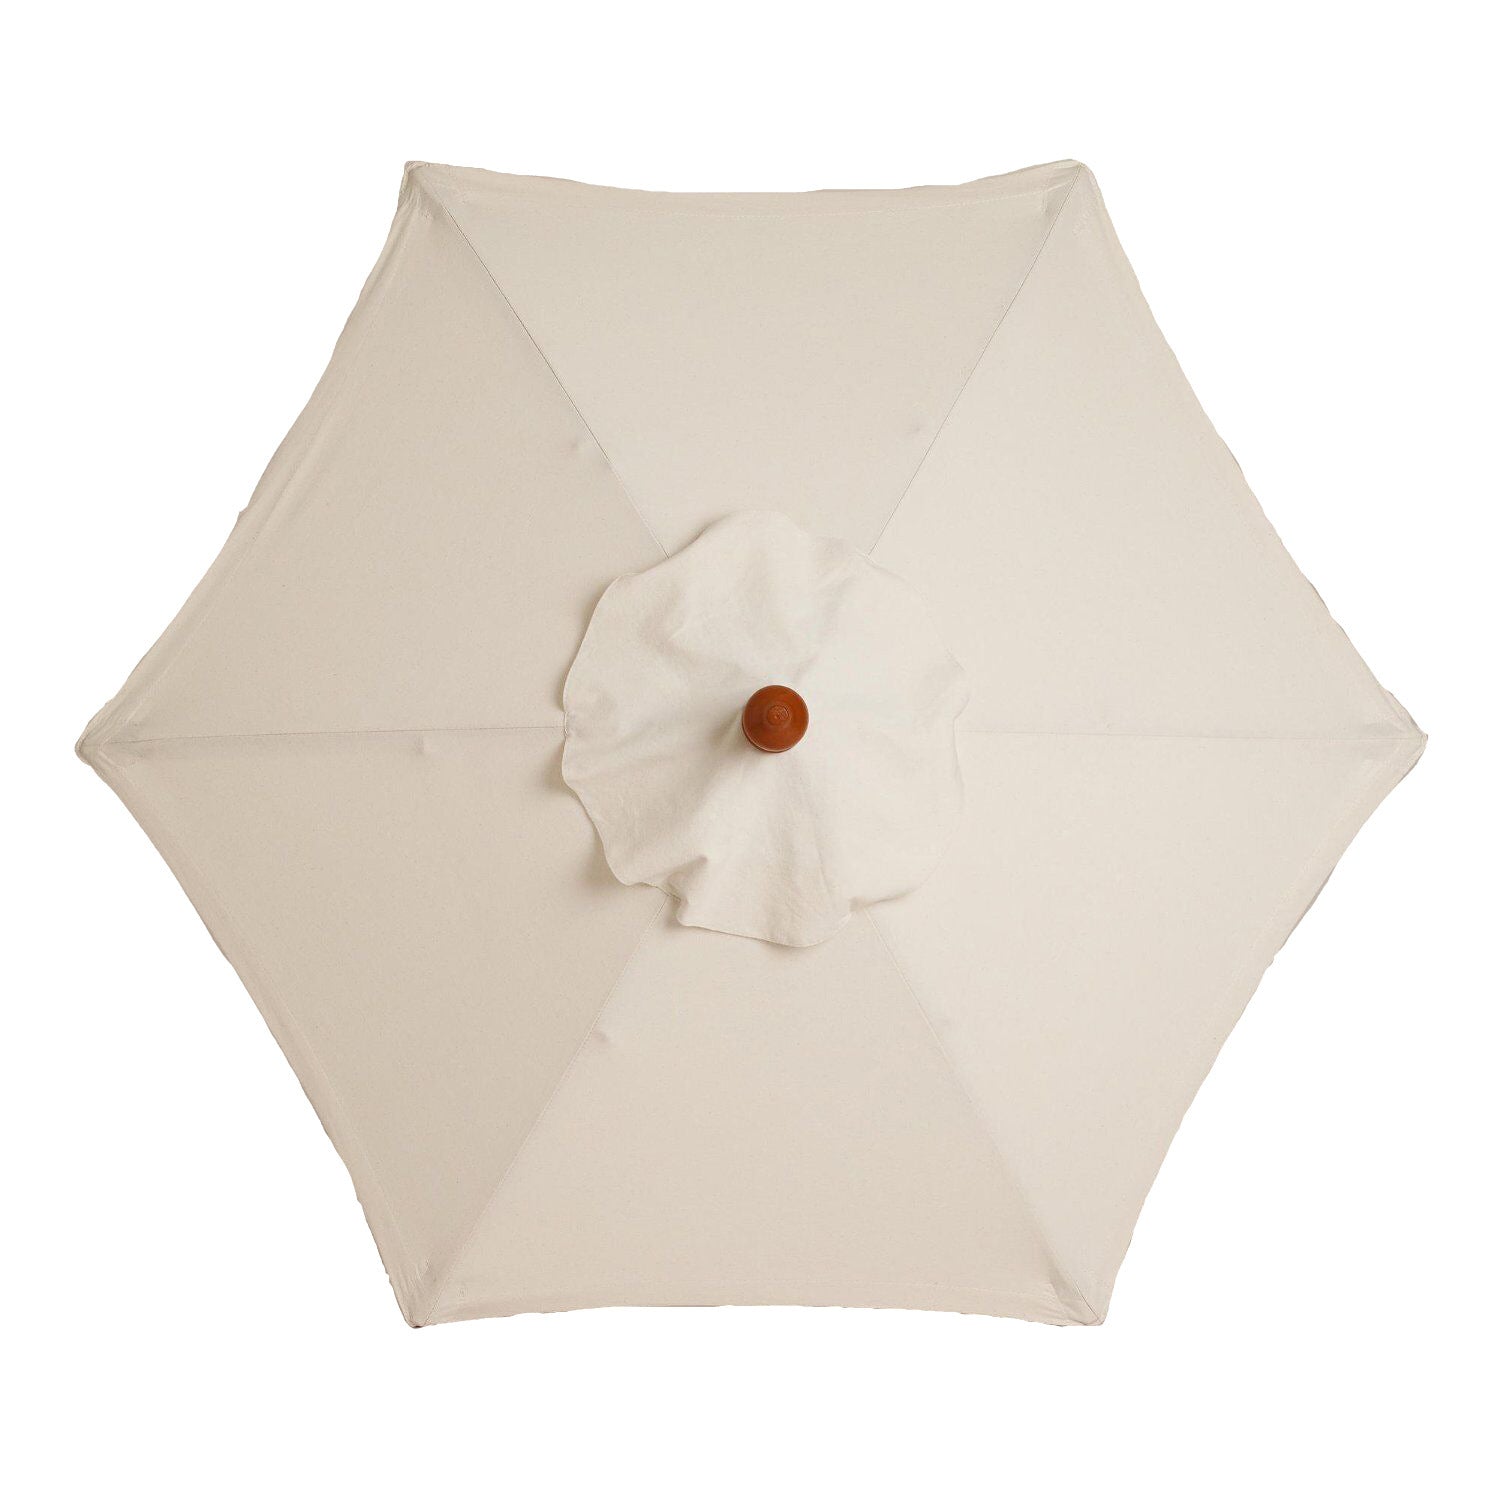 Outdoor Rainproof Umbrella